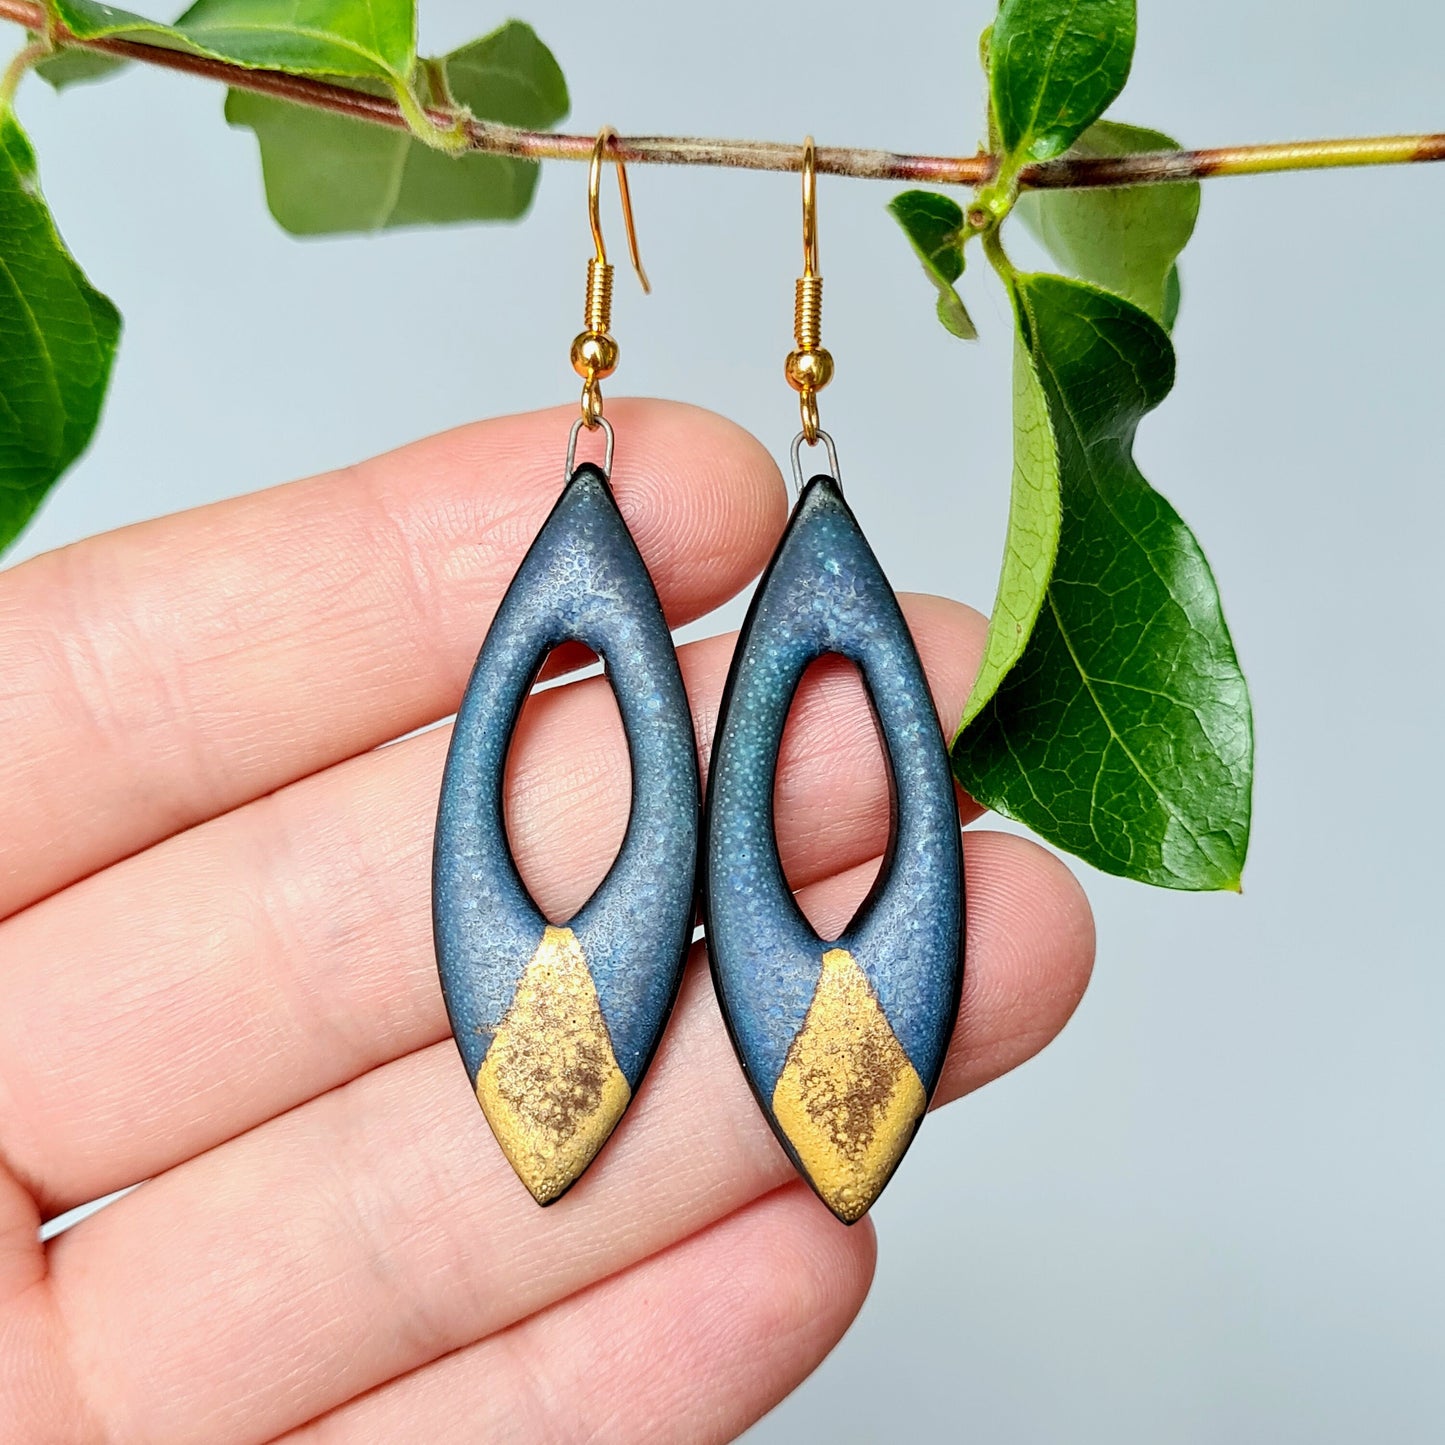 Handmade blue ceramic earrings with 24c matt gold leaf